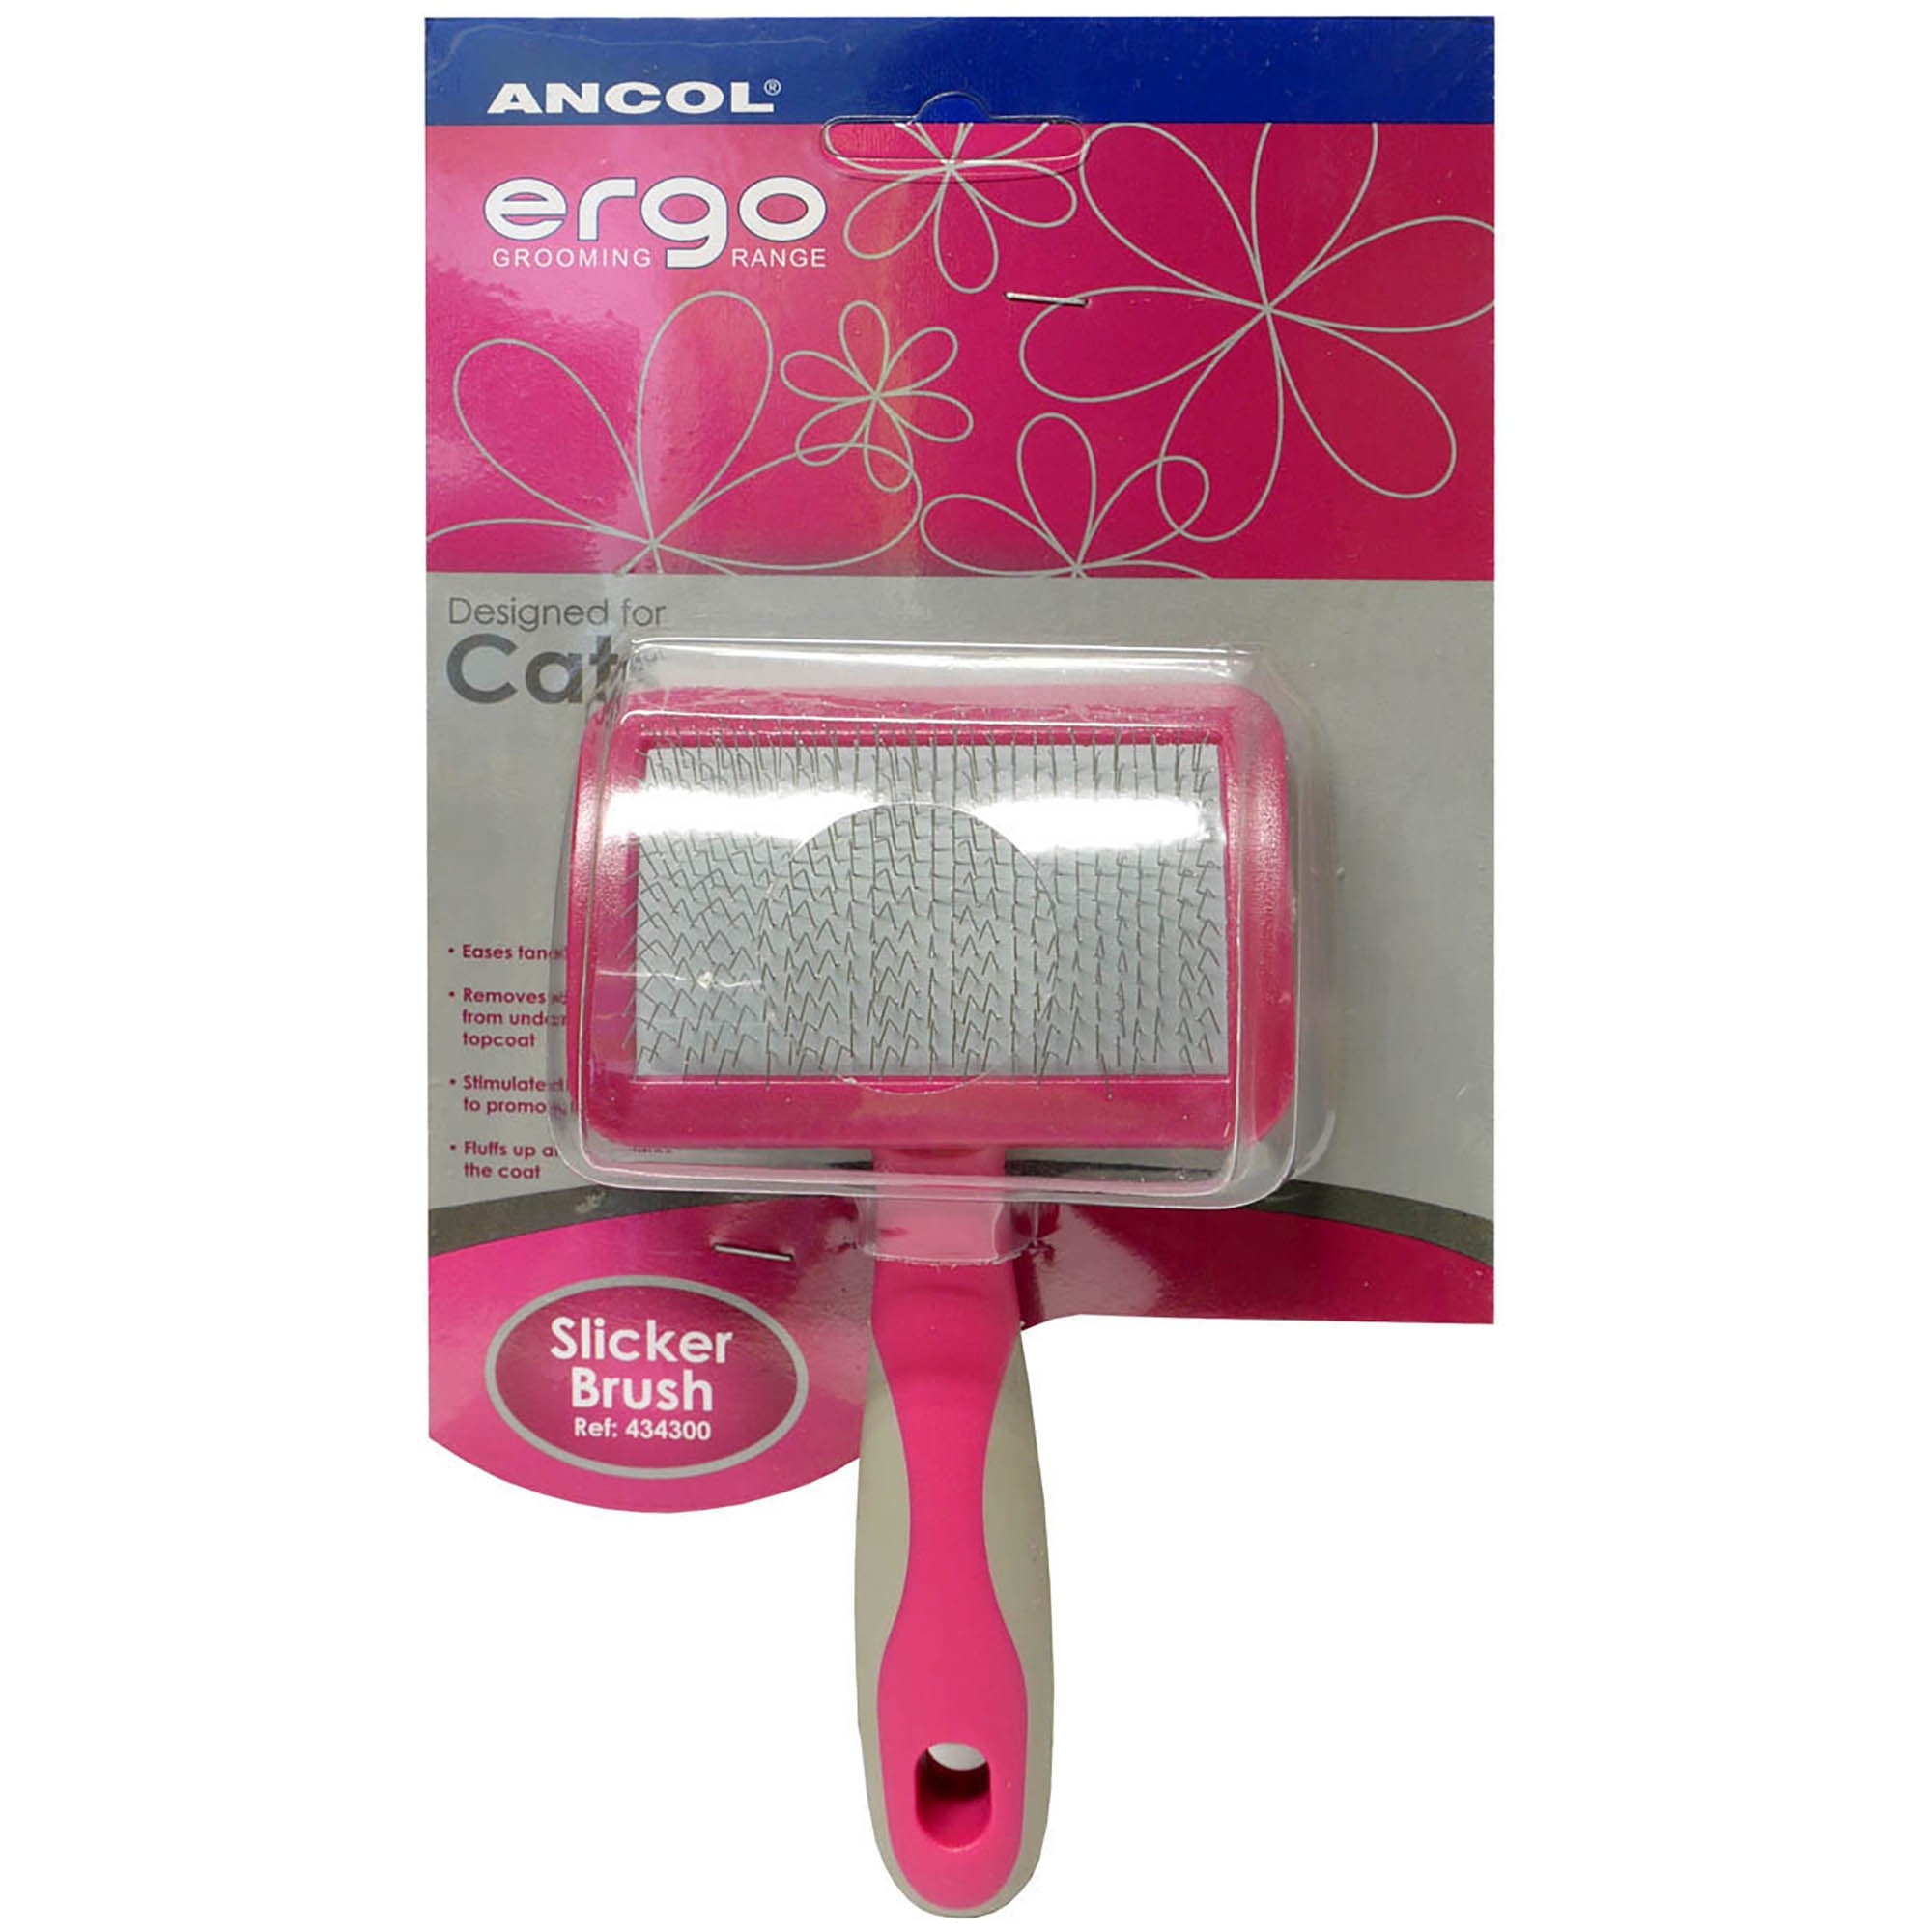 Ancol Ergo slicker brush for cats